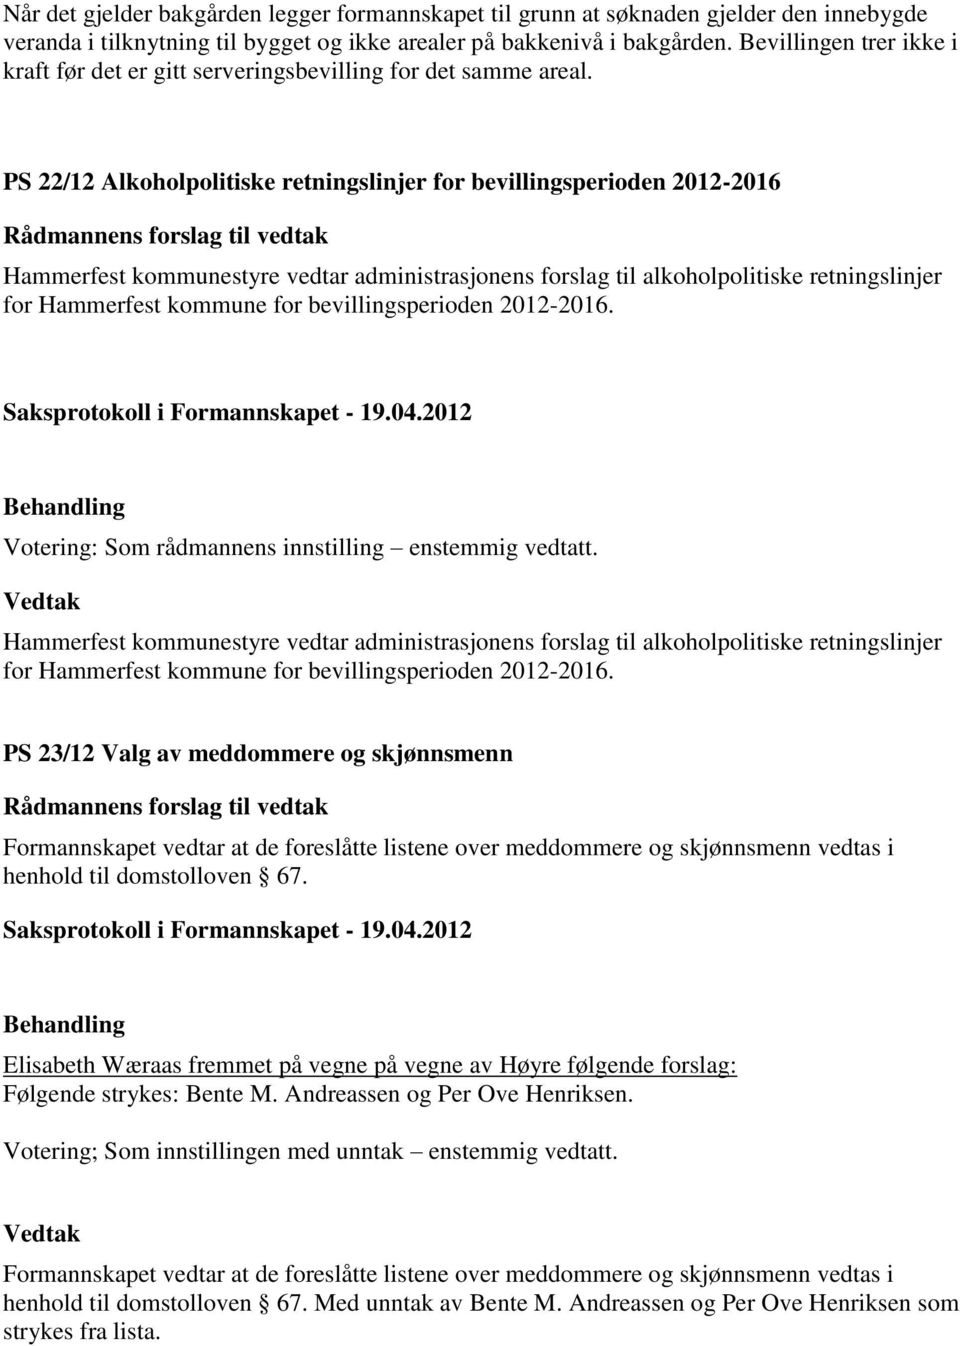 PS 22/12 Alkoholpolitiske retningslinjer for bevillingsperioden 2012-2016 Rådmannens forslag til vedtak Hammerfest kommunestyre vedtar administrasjonens forslag til alkoholpolitiske retningslinjer